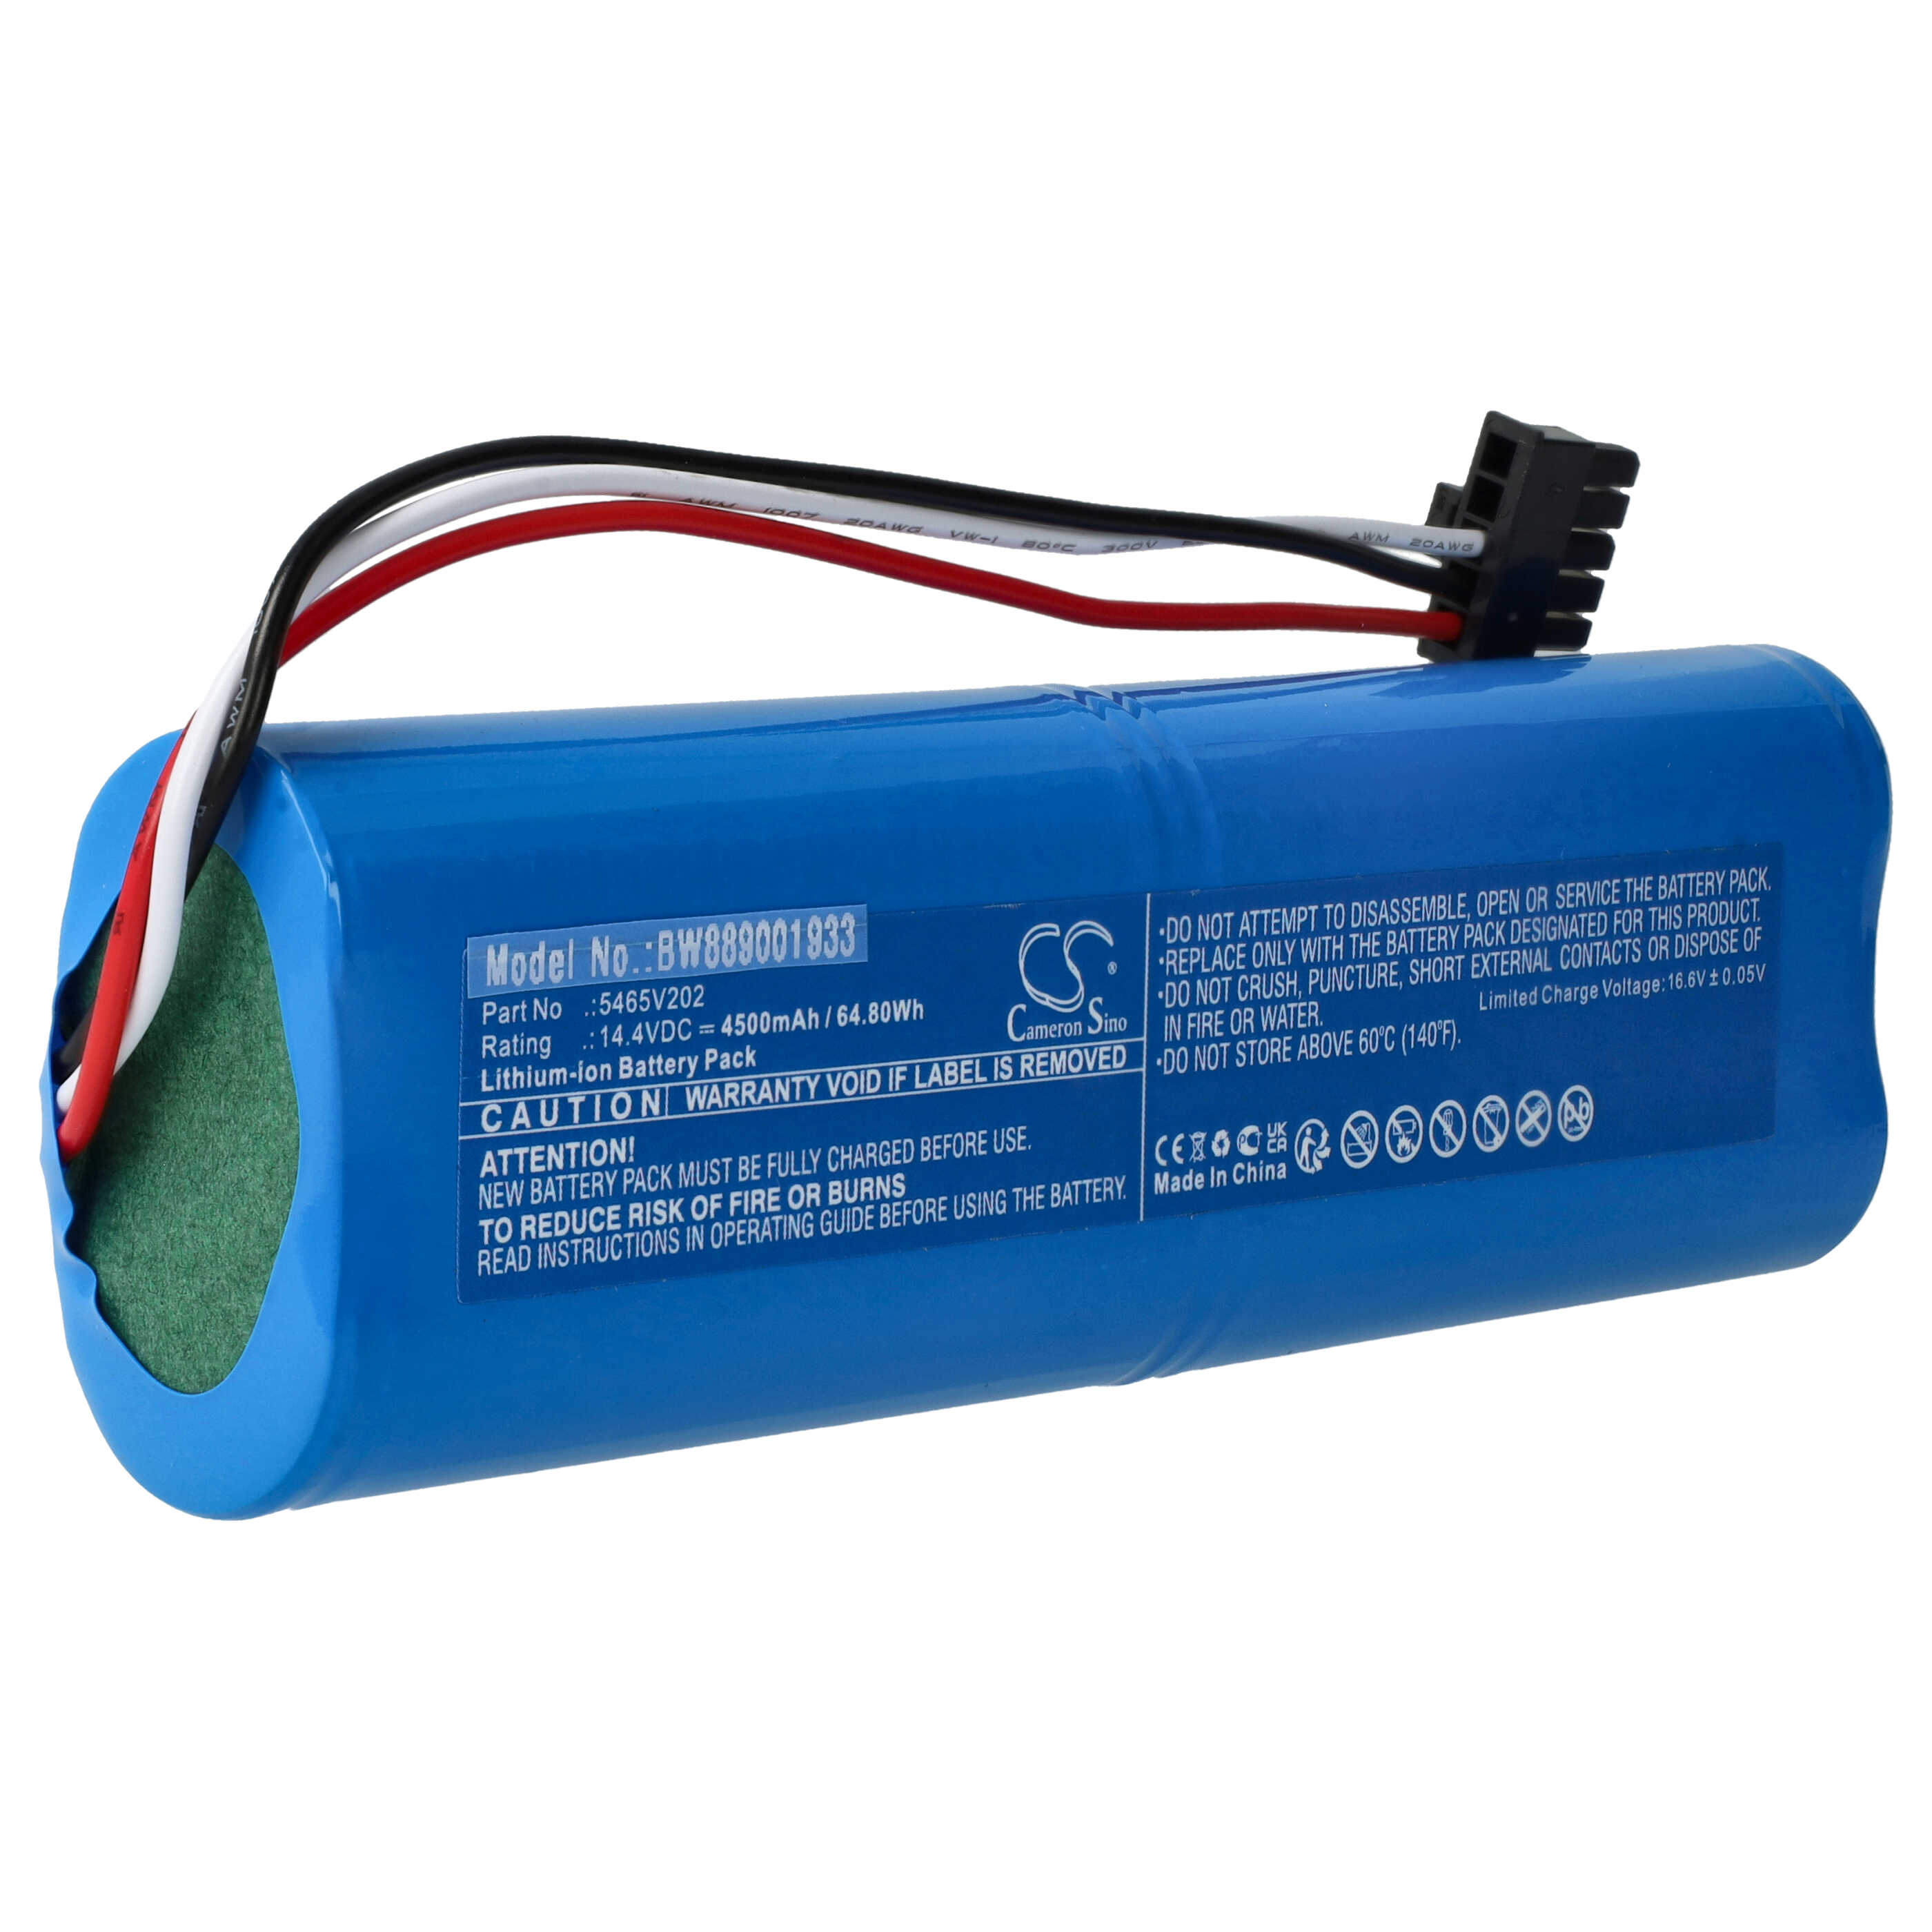 Batteria sostituisce Xiaomi 5465V202 per robot aspiratore Xiaomi - 4500mAh 14,4V Li-Ion